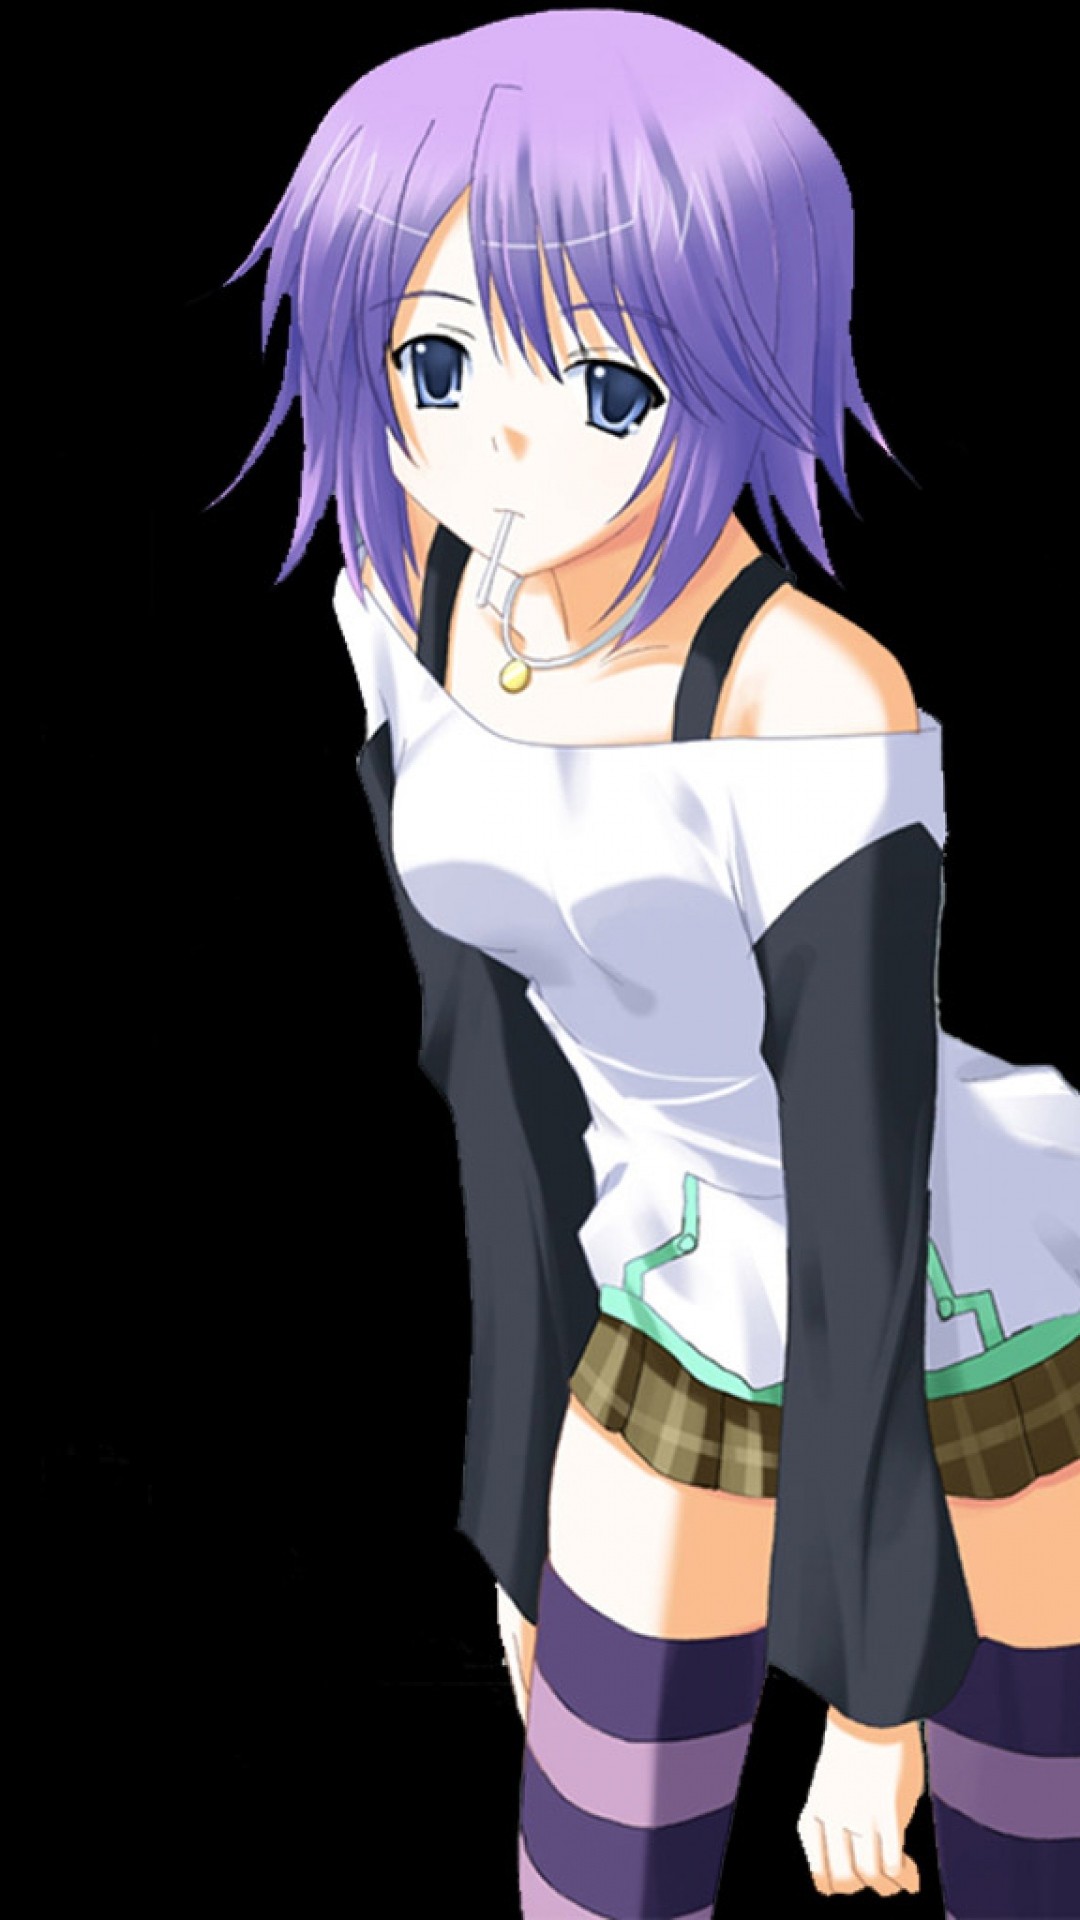 Wallpaper anime, girl, pose, background, stockings, skirt